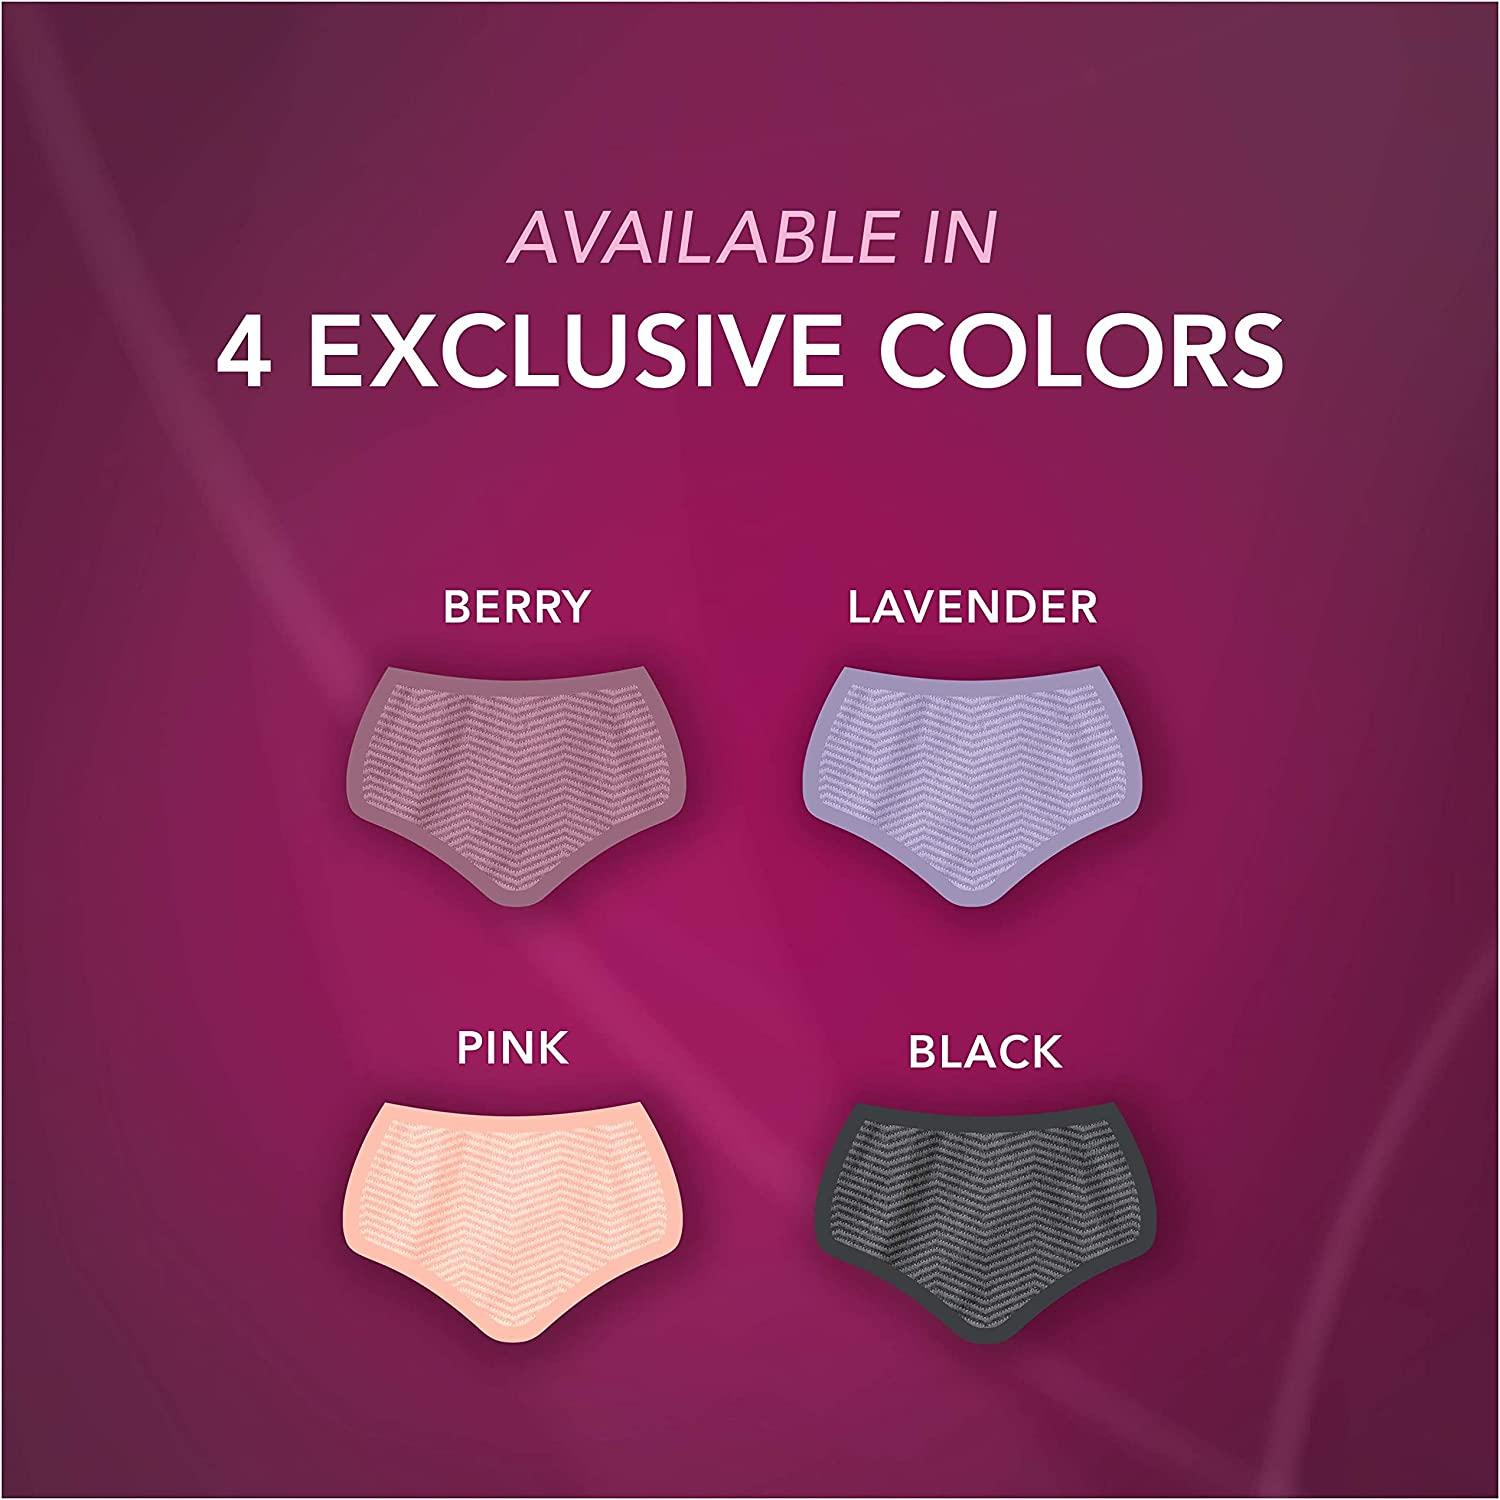 Depend Silhouette Incontinence Underwear Medium Pink 32–42 Inch